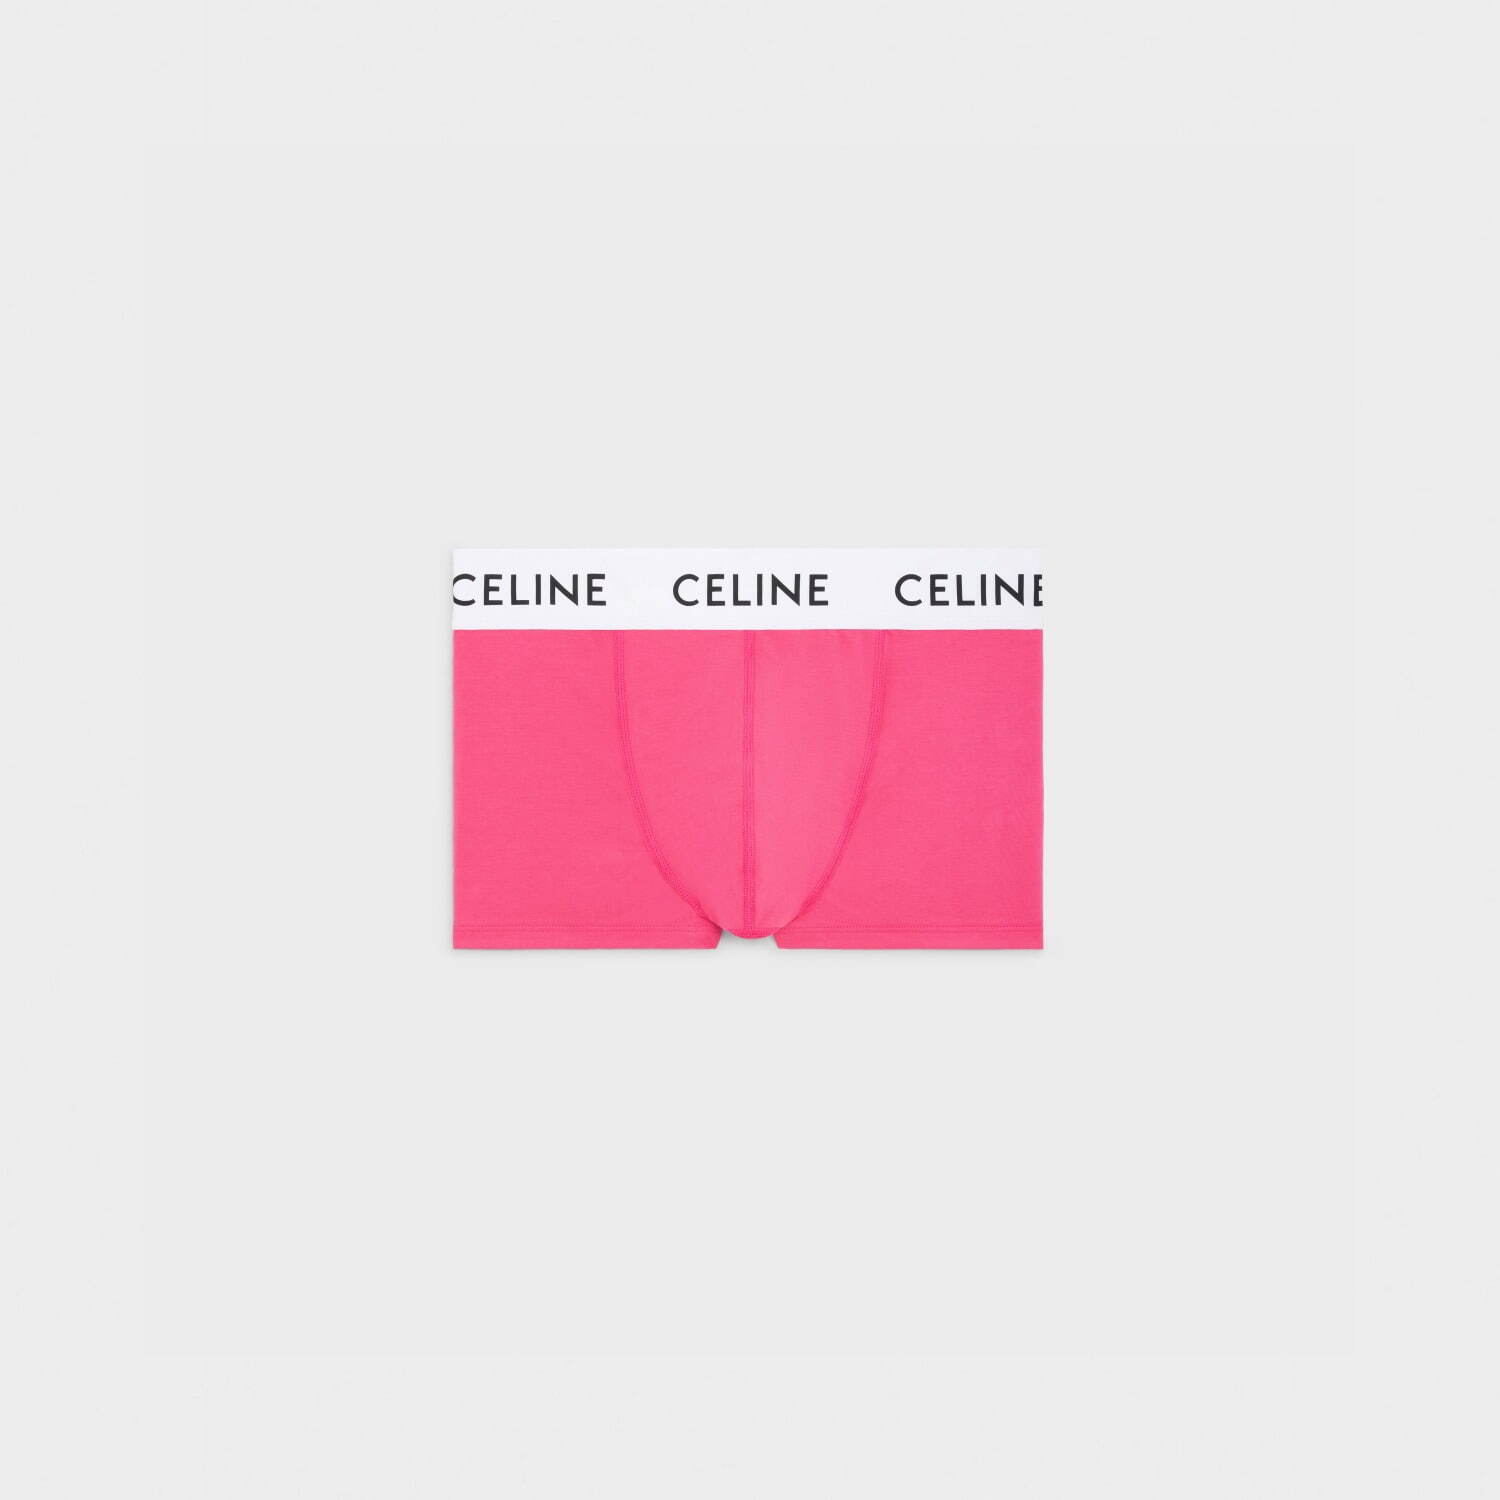 セリーヌ オム“ゴシック調ロゴ”の限定Tシャツやブルゾン、アート 